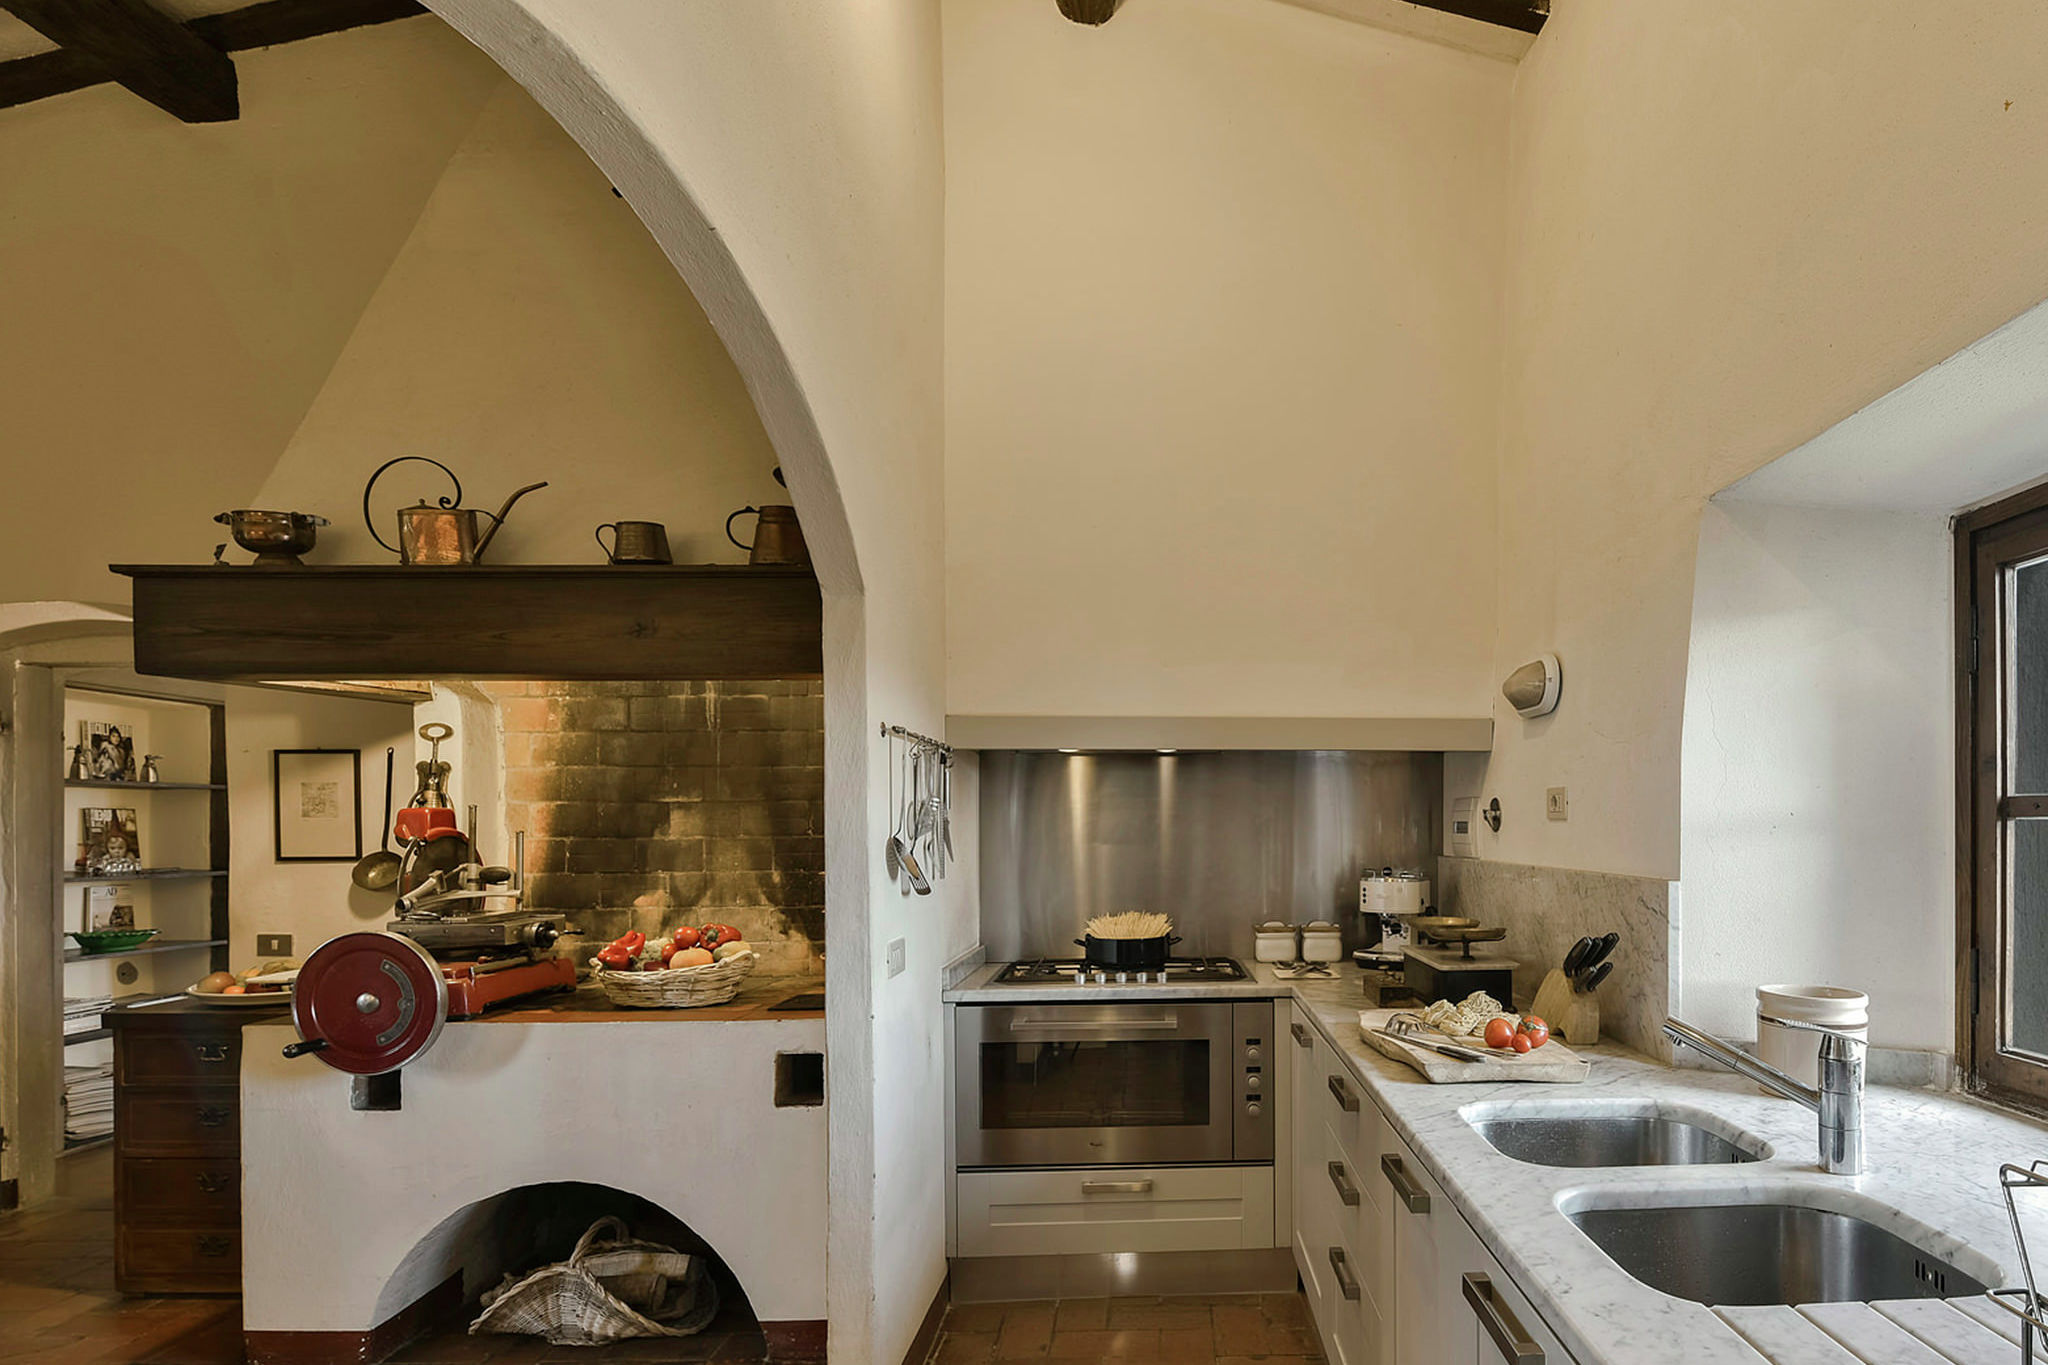 Plush Villa in Montefiridolfi with Spacious Kitchen & Pool